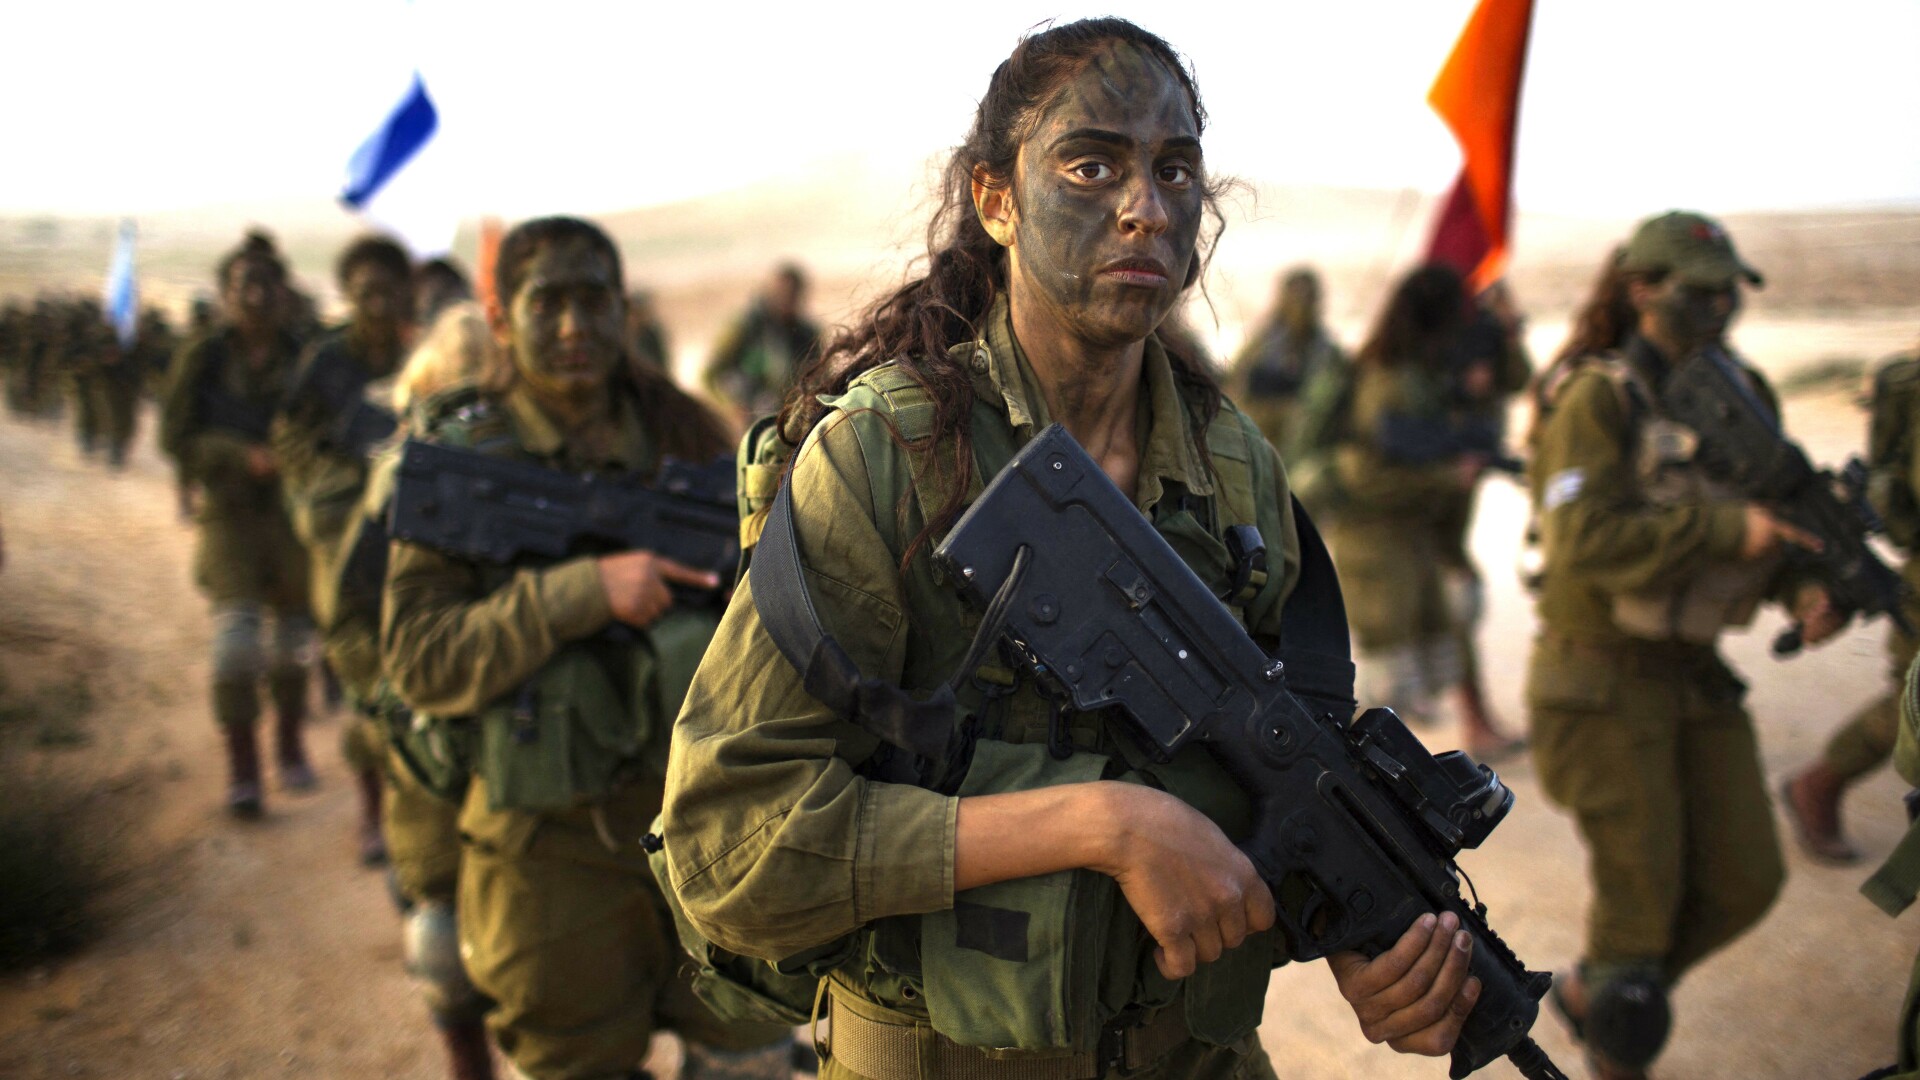 armata femei israel